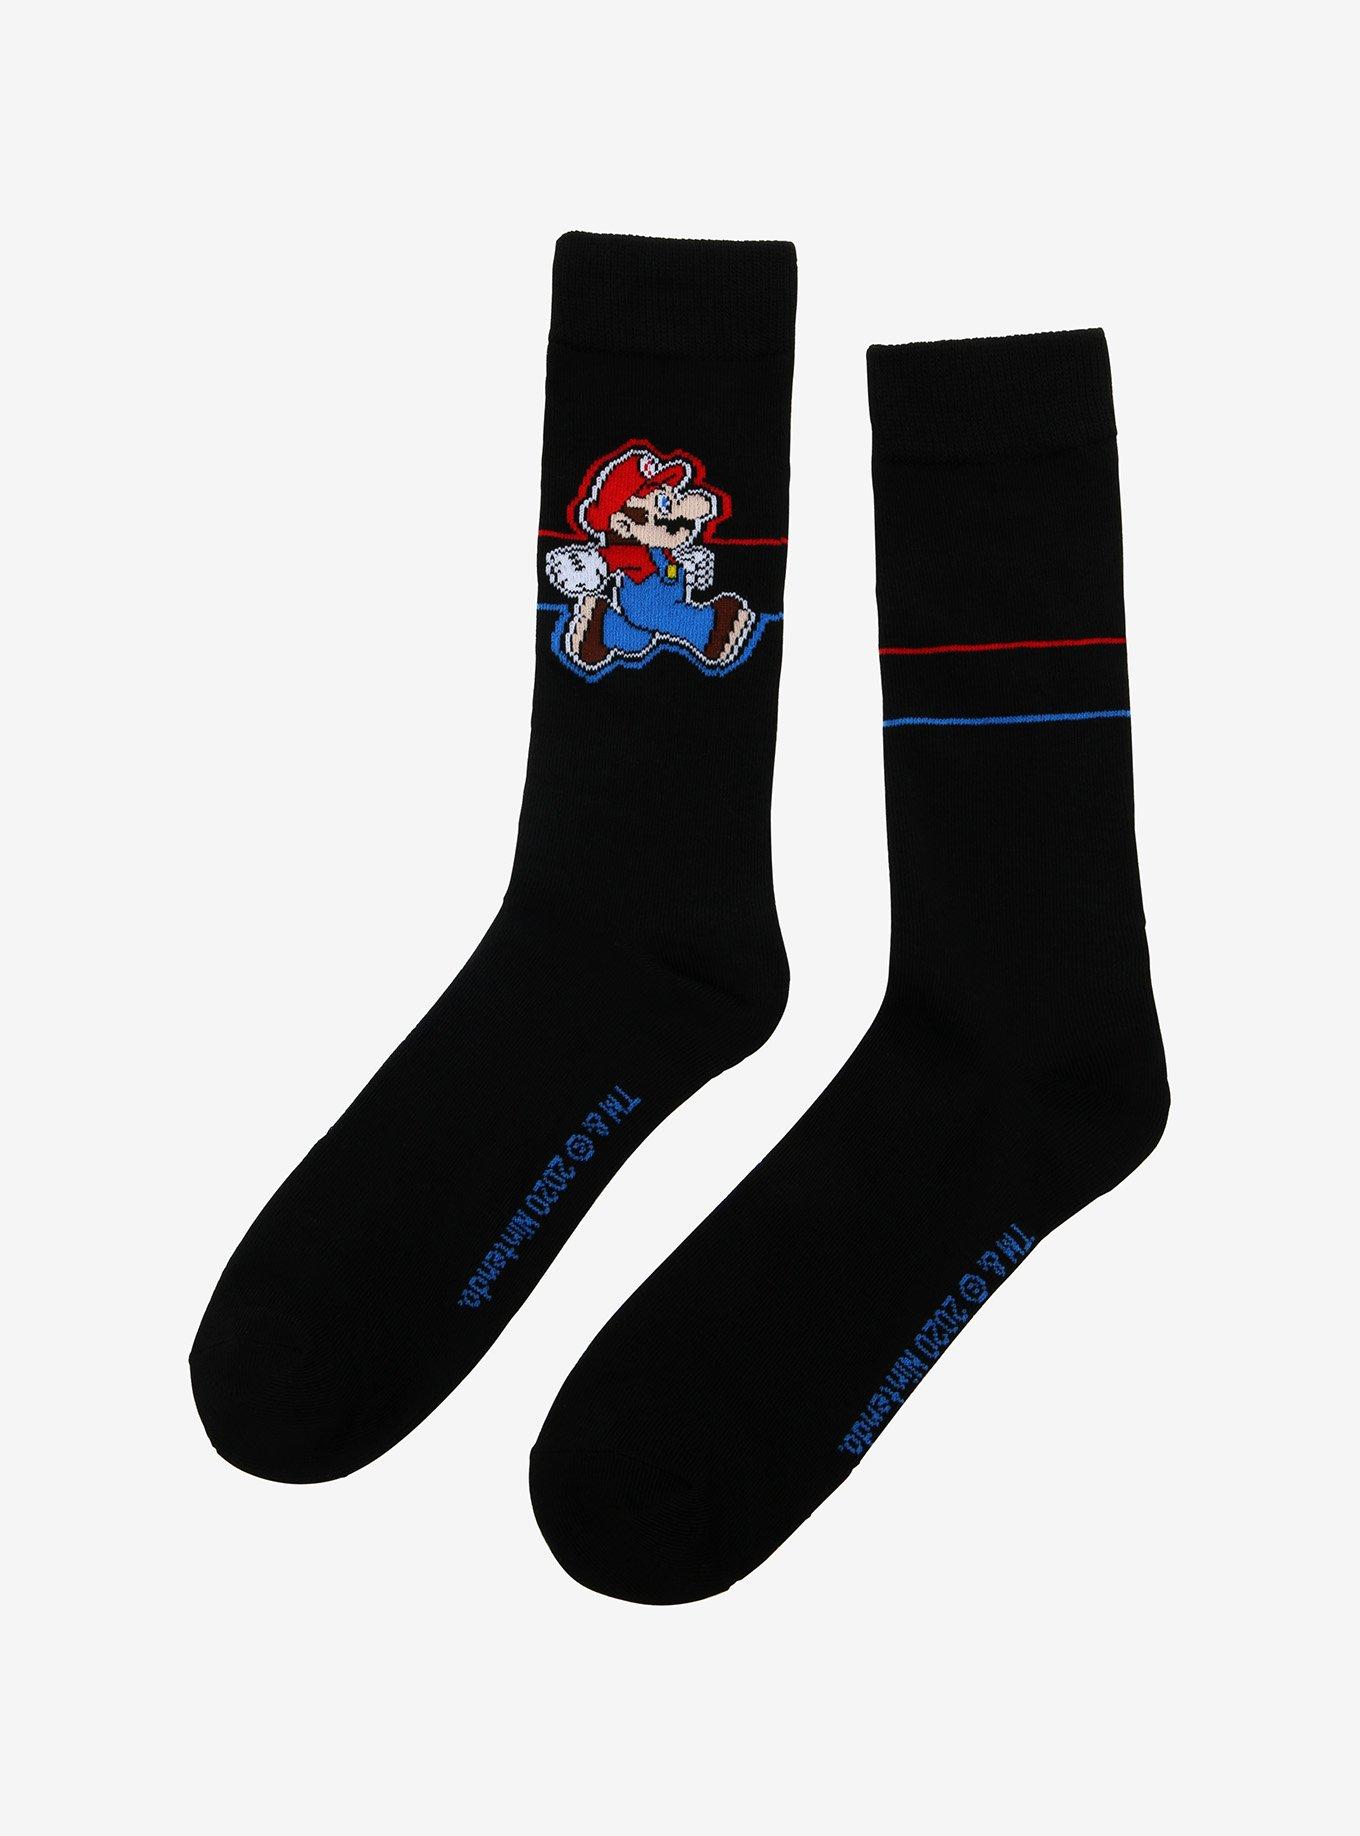 Super Mario Bros. Mario Run Crew Socks, , alternate